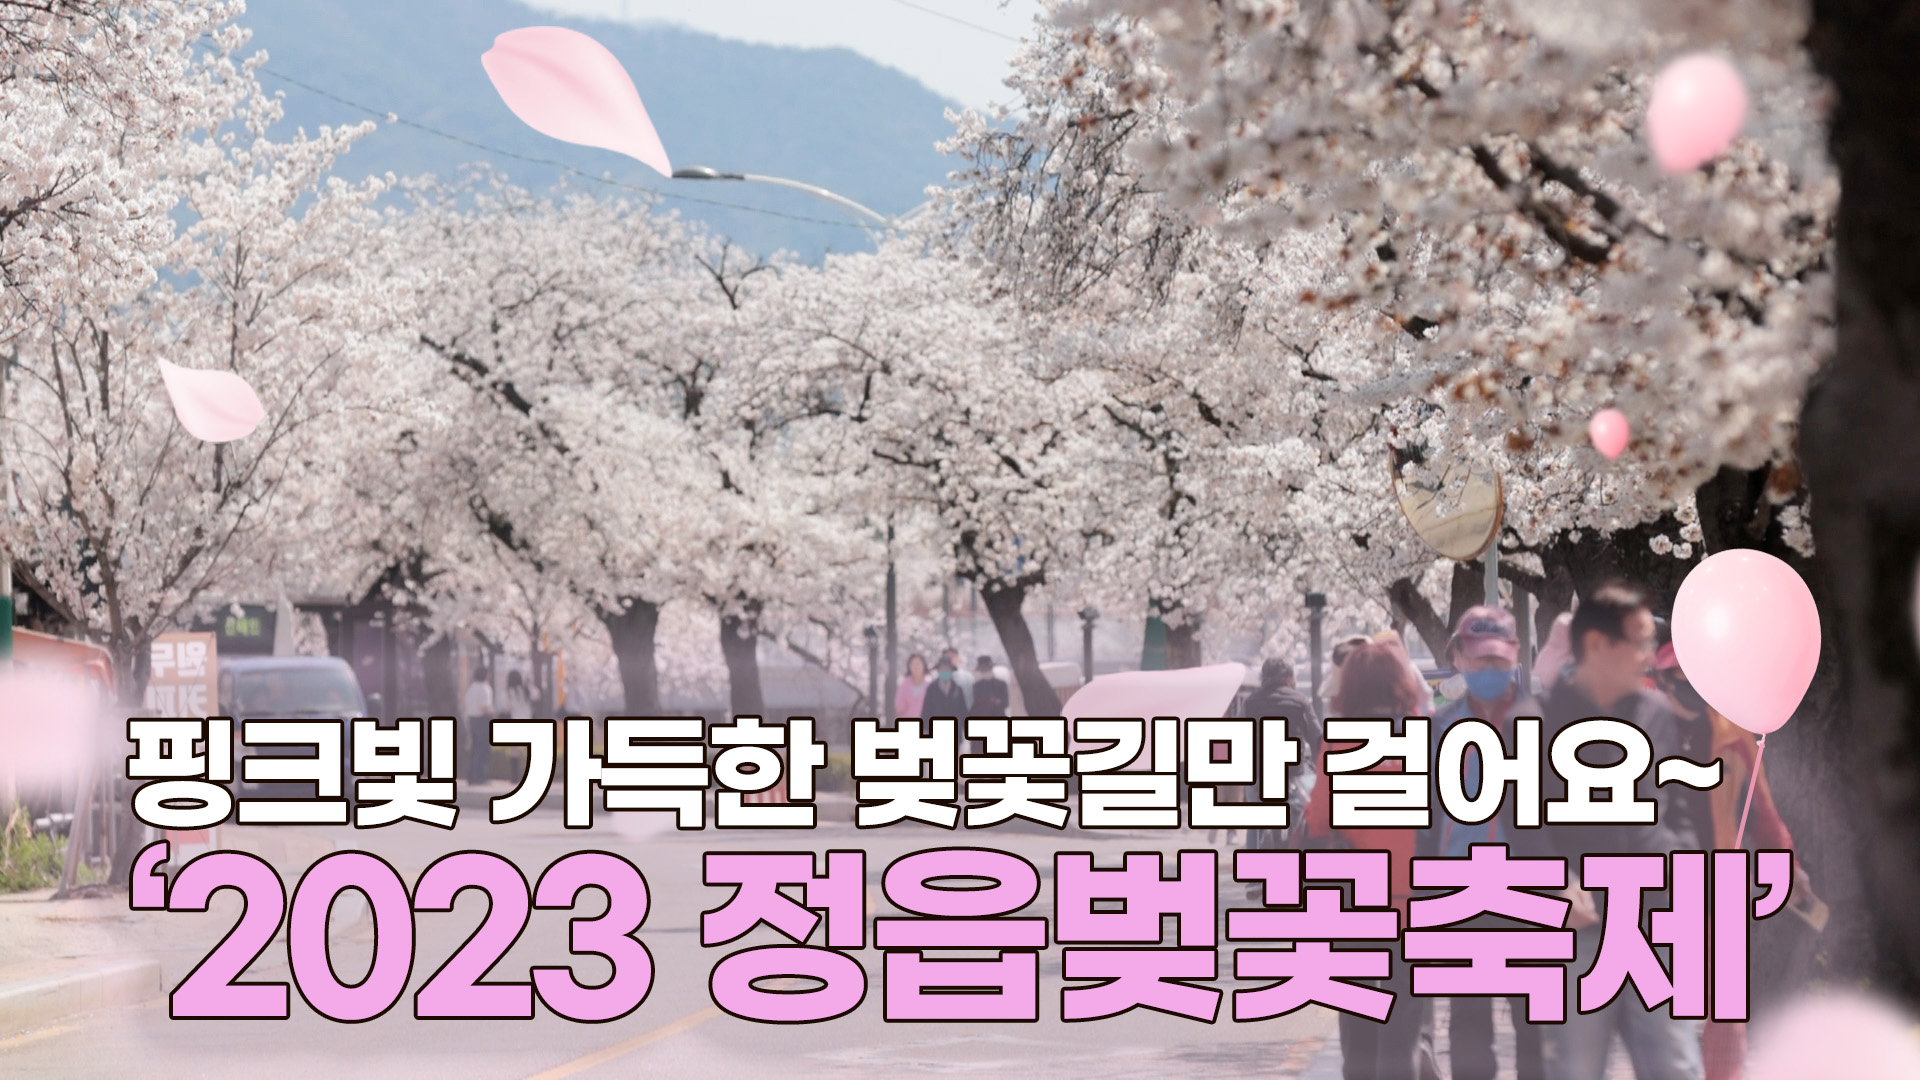 핑크빛 가득한 벚꽃길만 걸어요 2023 정읍벚꽃축제